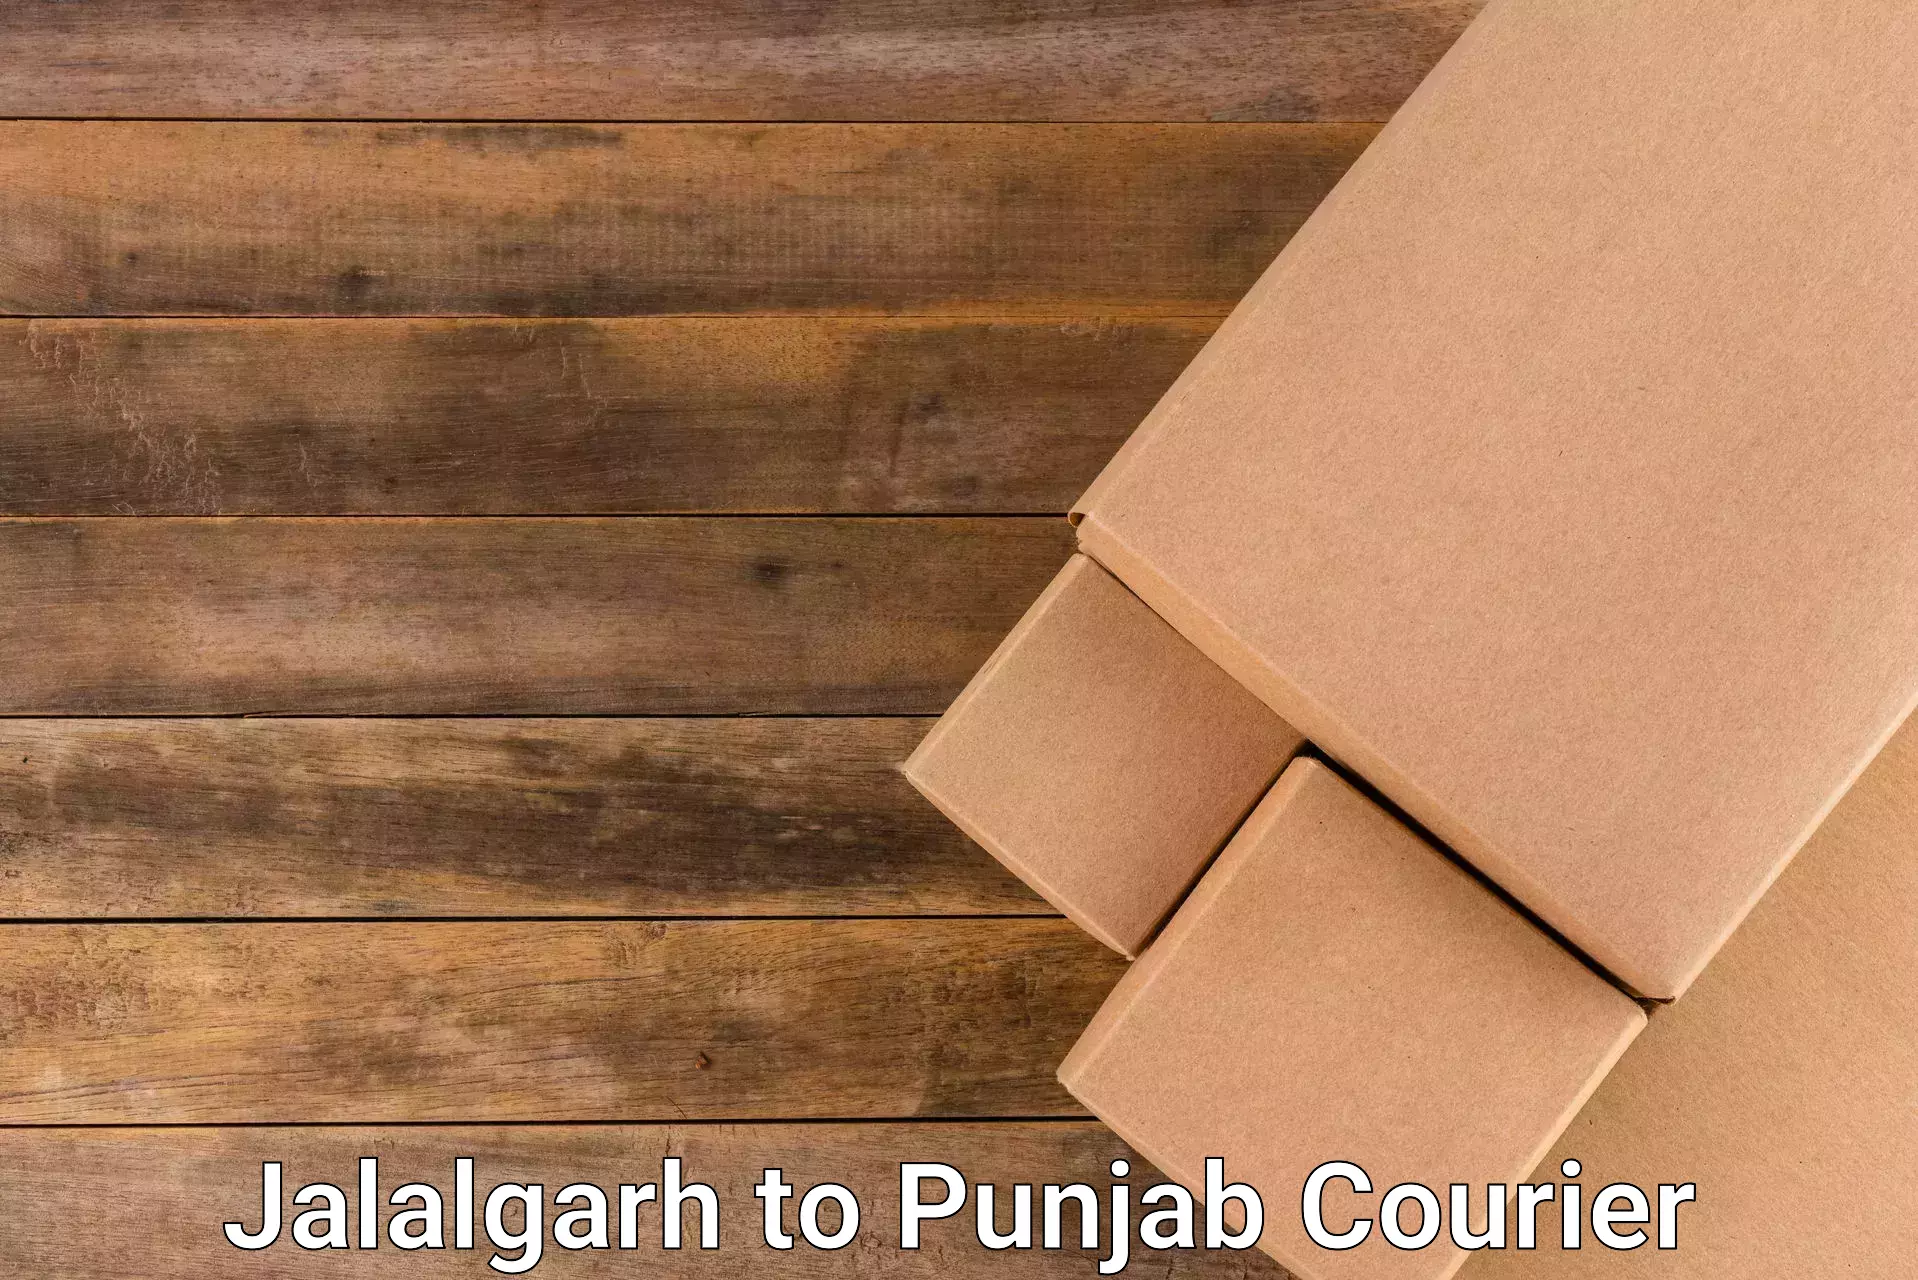 Affordable parcel service Jalalgarh to Batala